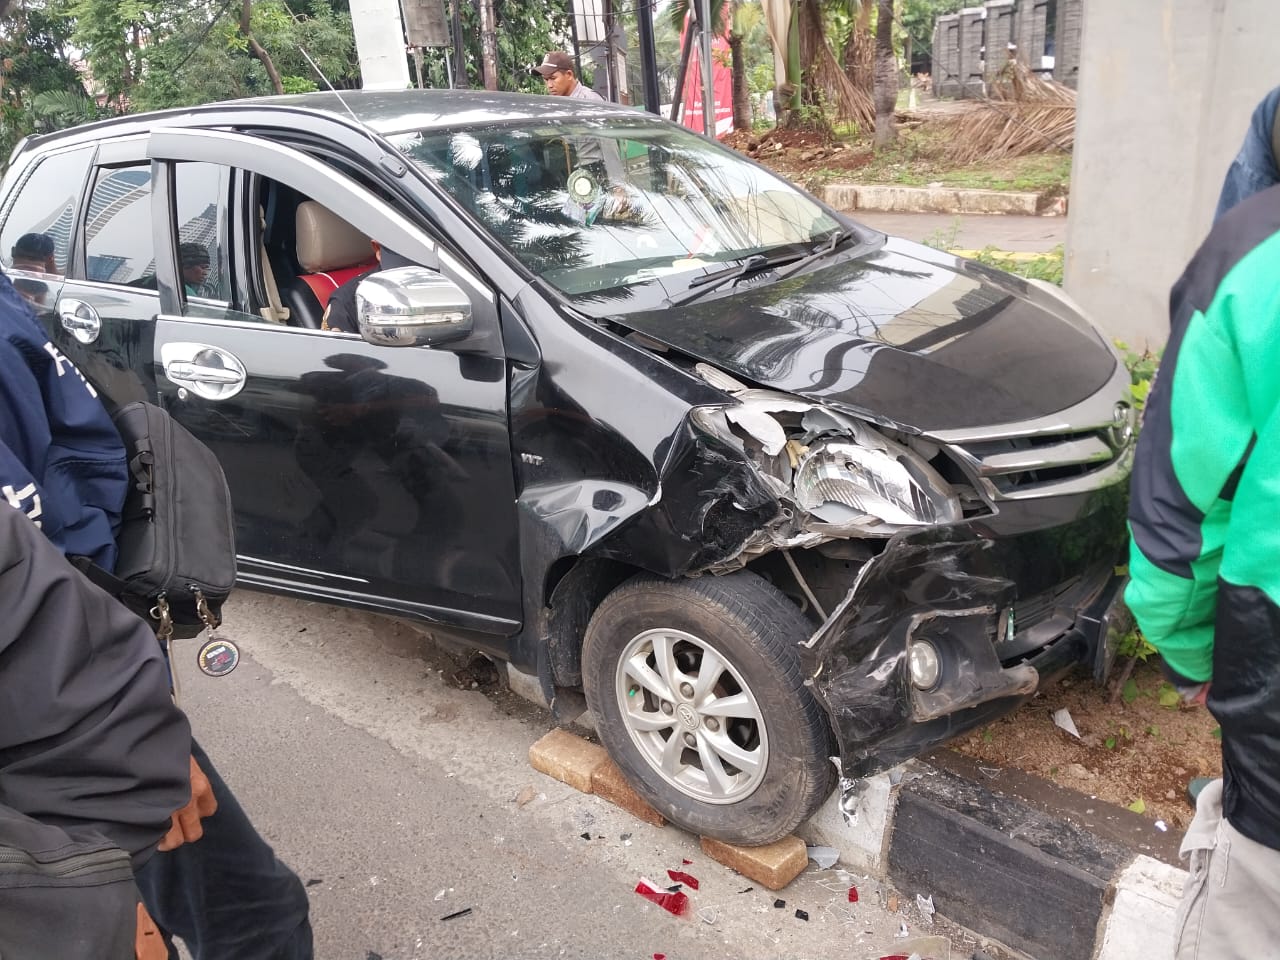 Mobil Avanza Ringsek Hajar Mobil Lain di Tendean, Sang Sopir Ungkap Penyebab Kecelakaan, Ngeri!